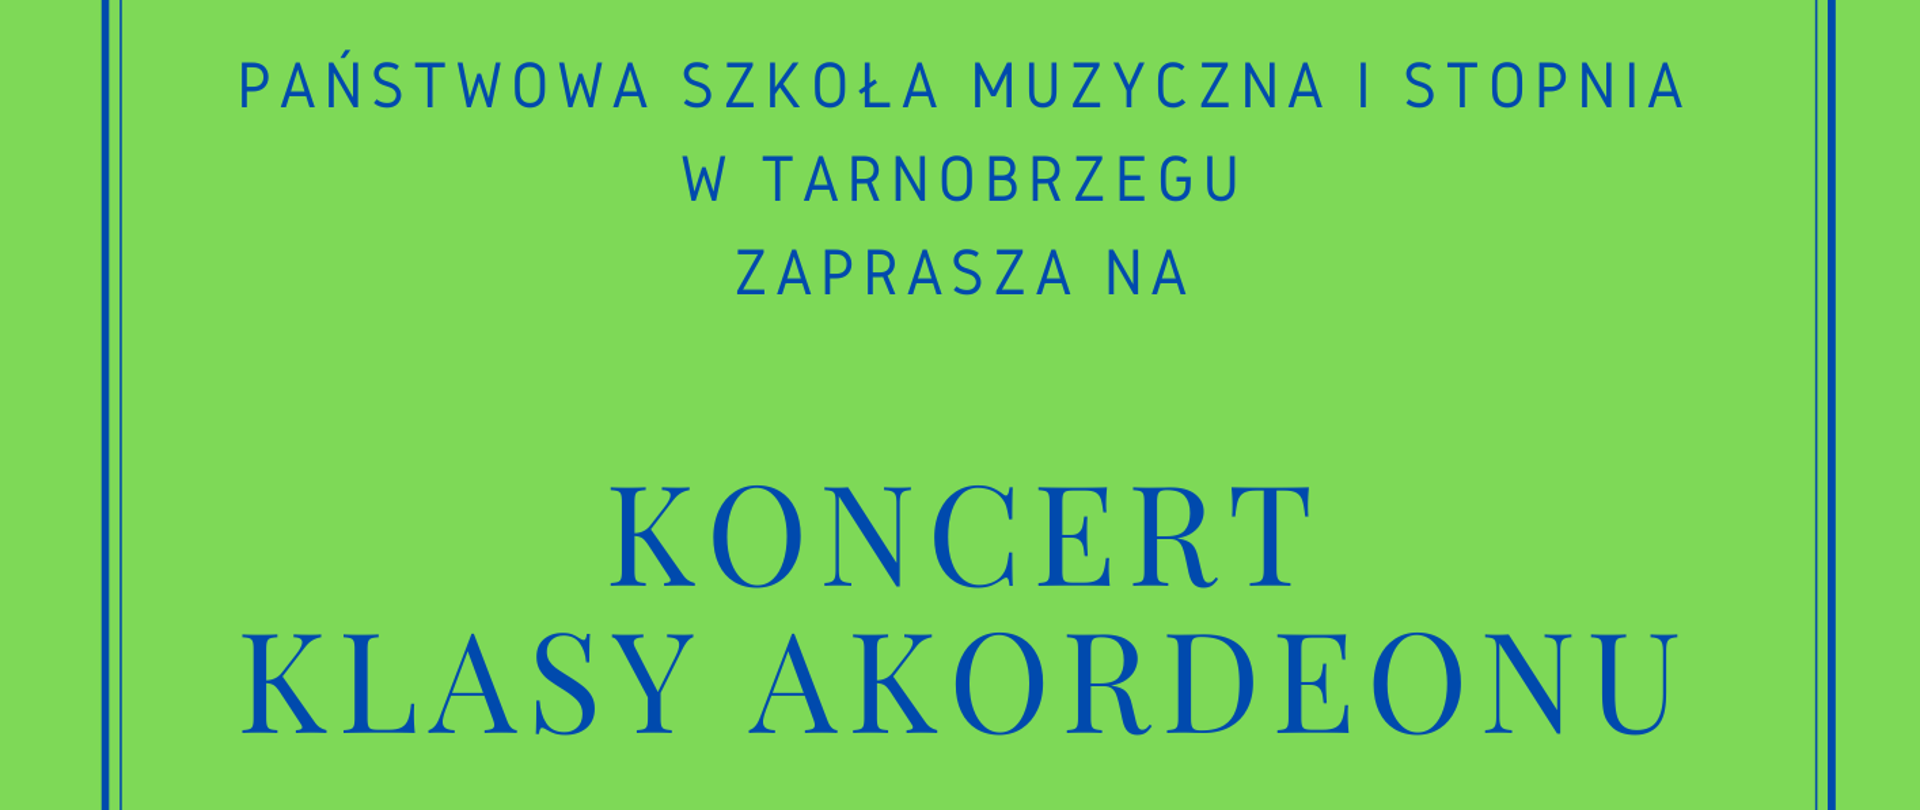 Plakat koncertu akordeonowego na zielonym tle niebieskie napisy. Po środku czarny akordeon